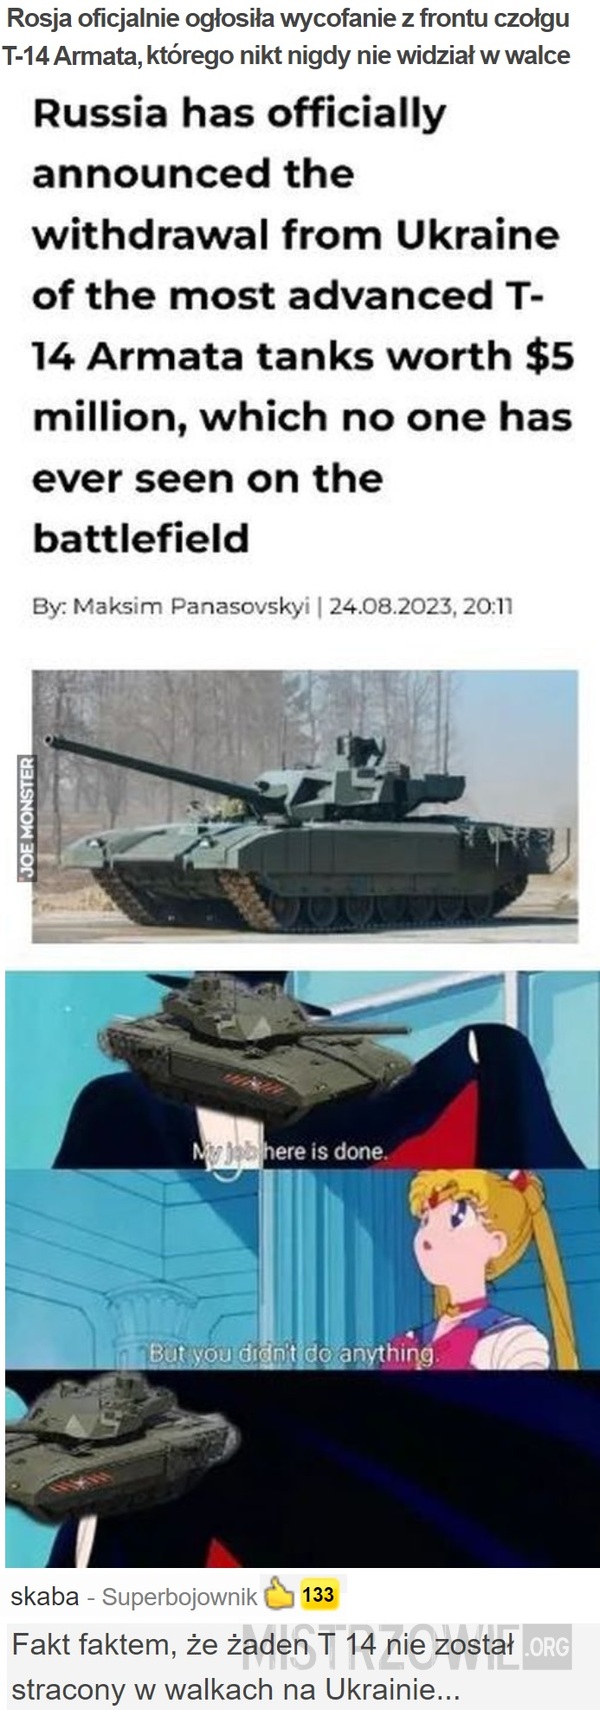 Rosja oficjalnie ogłosiła wycofanie z frontu czołgu T-14 Armata –  